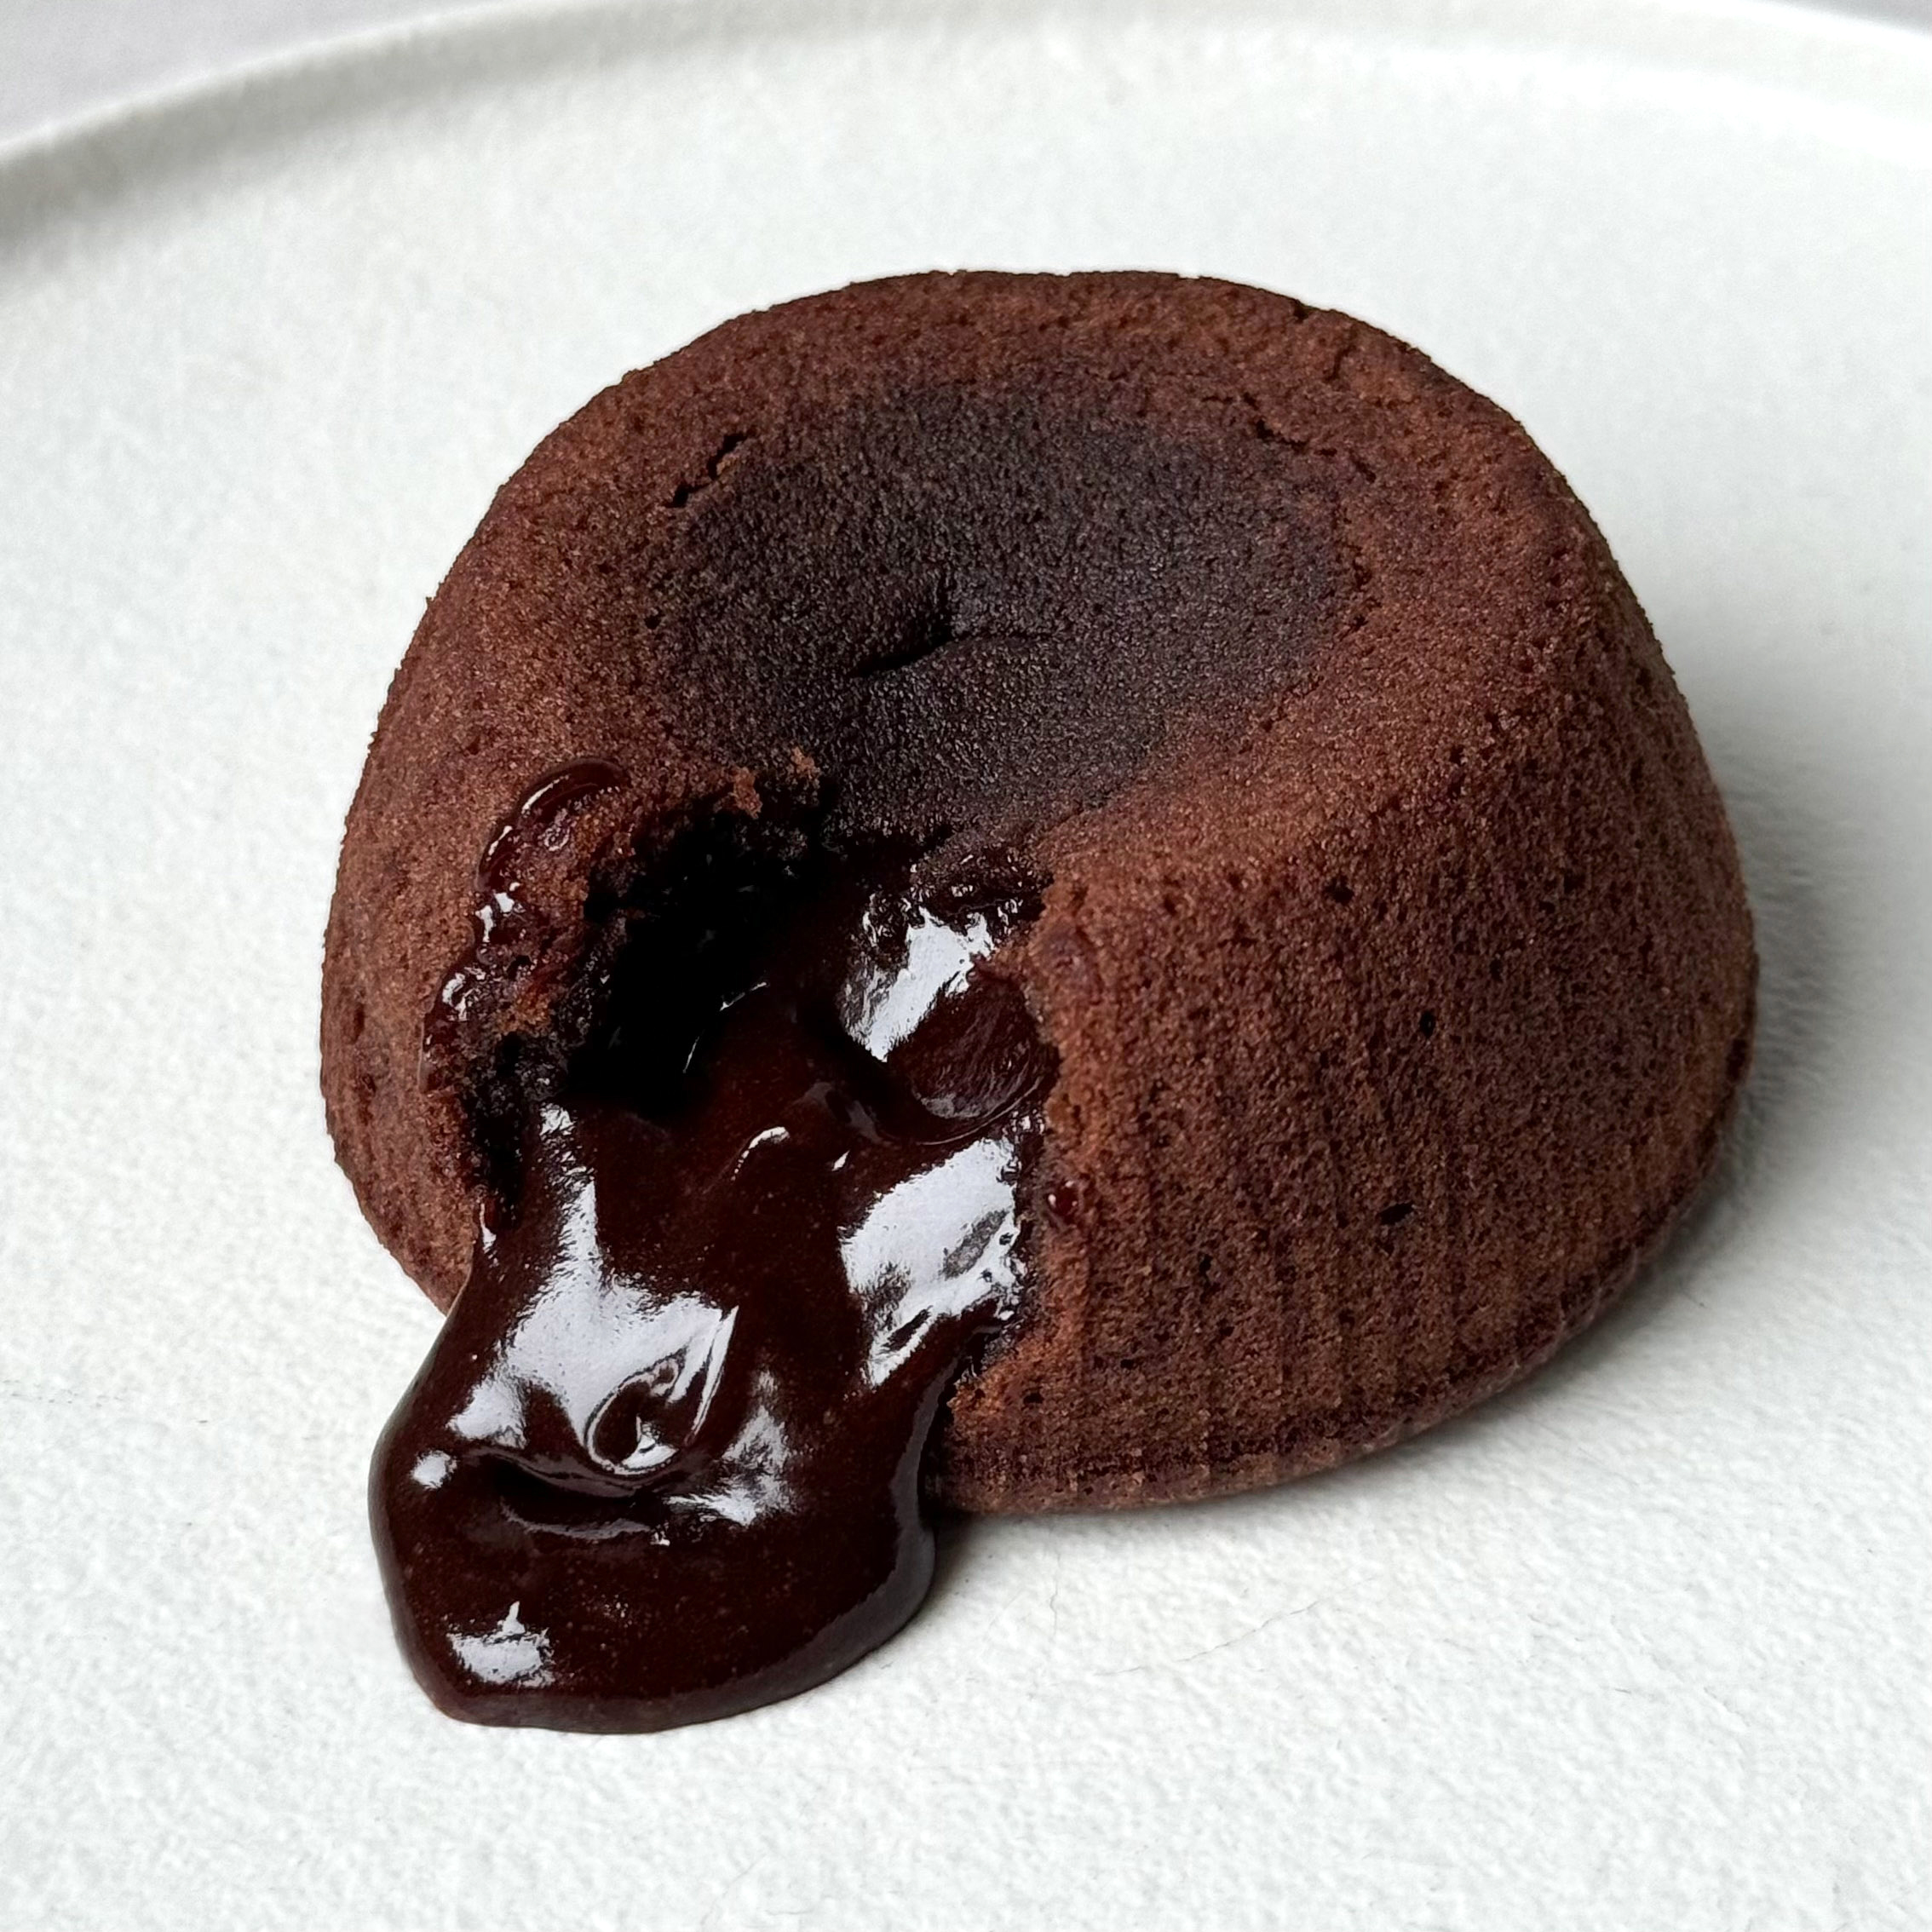 Пирожное из темного шоколада «BarryCallebaut» (Южная Америка) с жидким шоколадом внутри. изображение 4